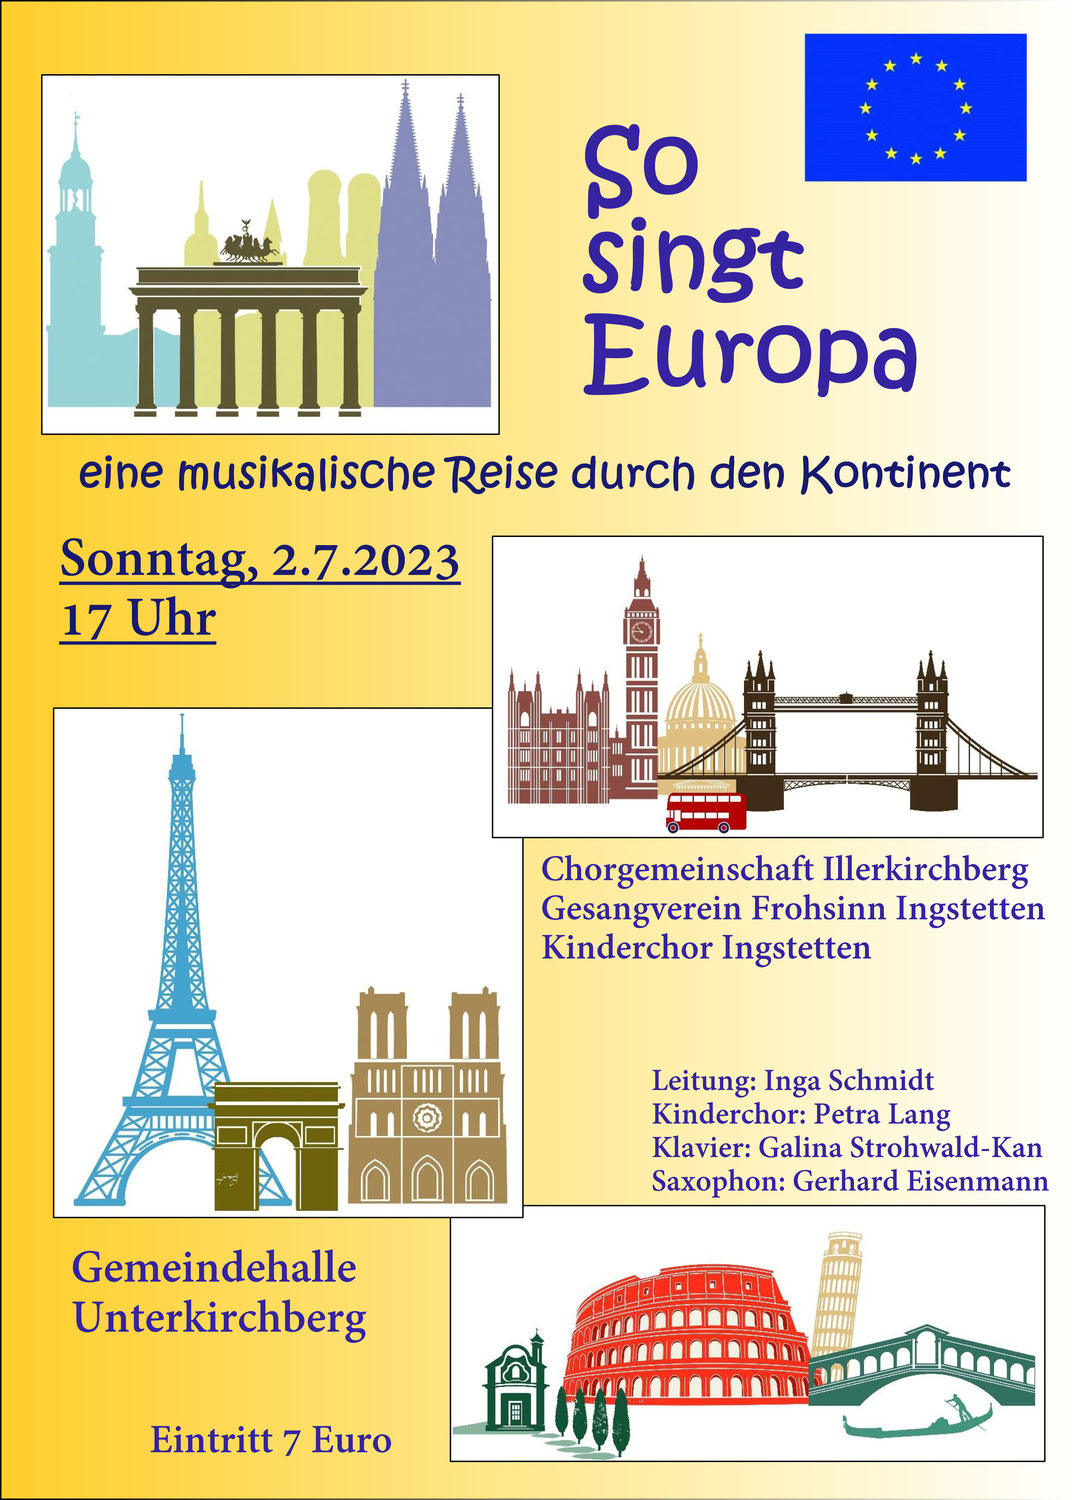 So singt Europa, Konzert am 2.7.2023